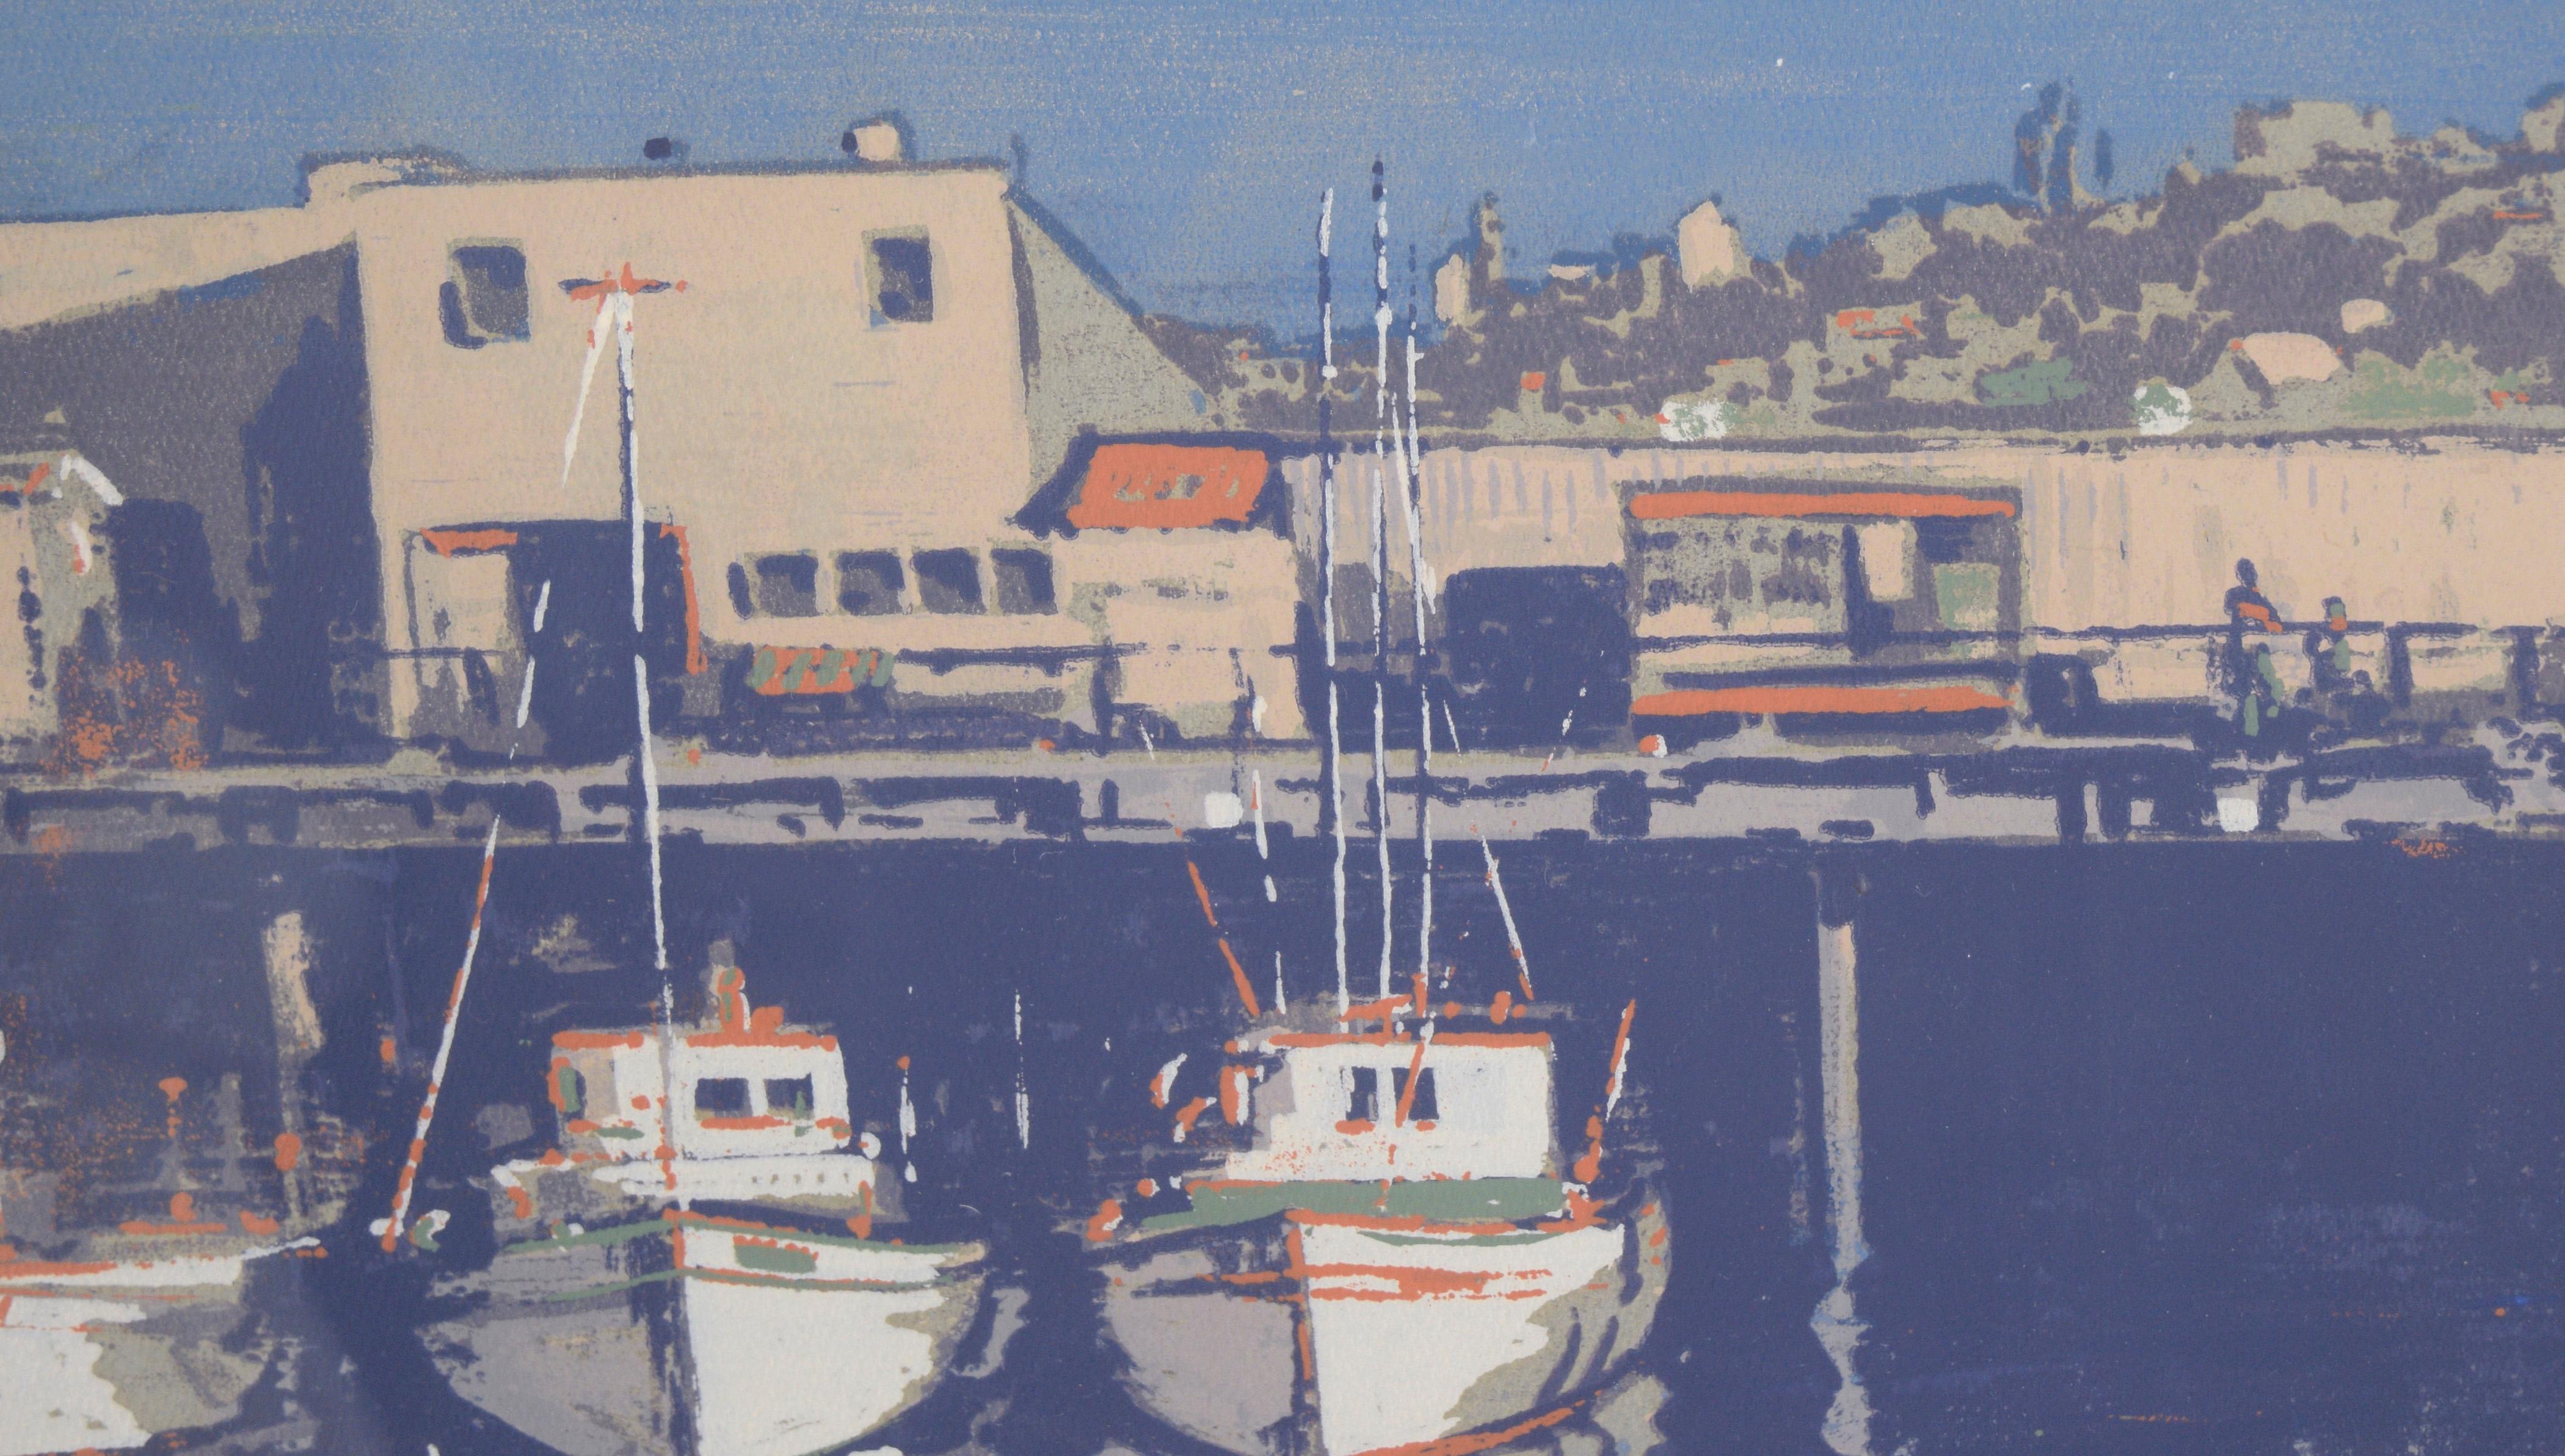 « Fisherman's Wharf - San Francisco » sérigraphie à plusieurs niveaux sur papier - signé

Rare et audacieuse sérigraphie de Fisherman's Wharf 1957 par Gordon Cope (américain, 1906-1999). Plusieurs bateaux sont amarrés à Fisherman's Wharf, avec des